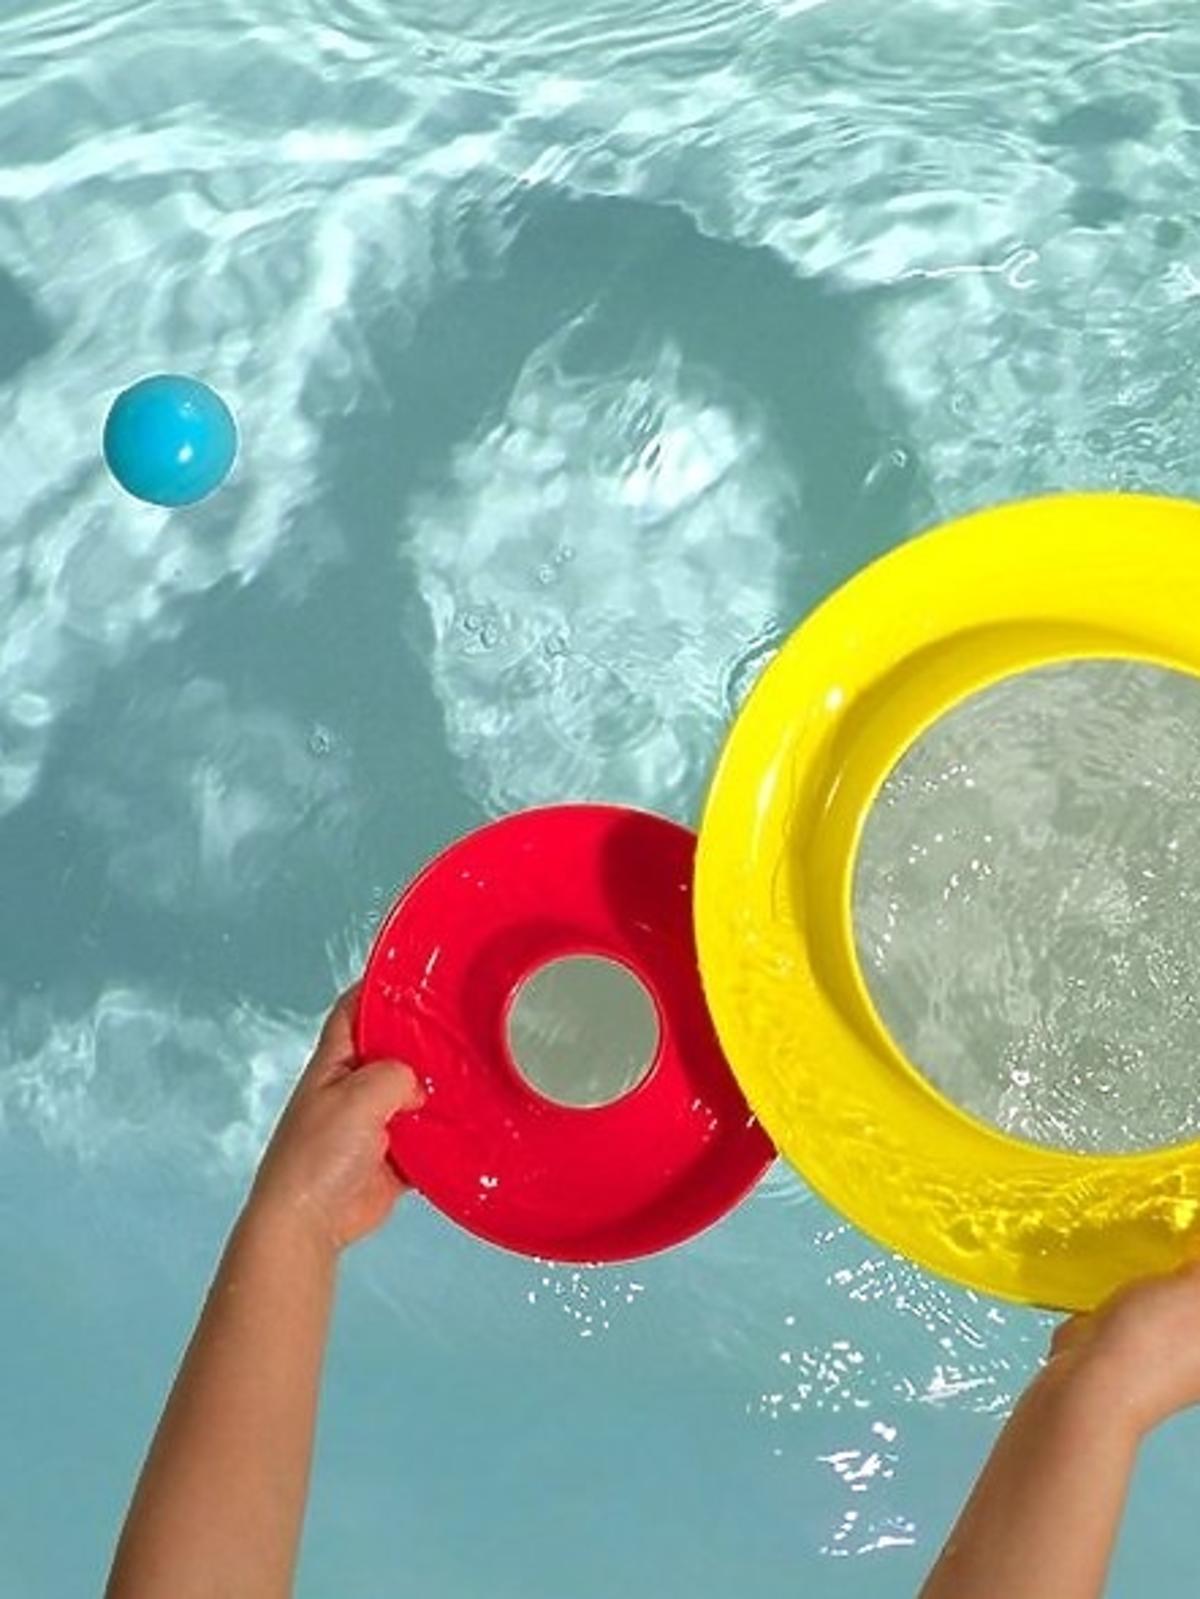 zabawka kreatywna nello w wodzie dla dzieci.jpg